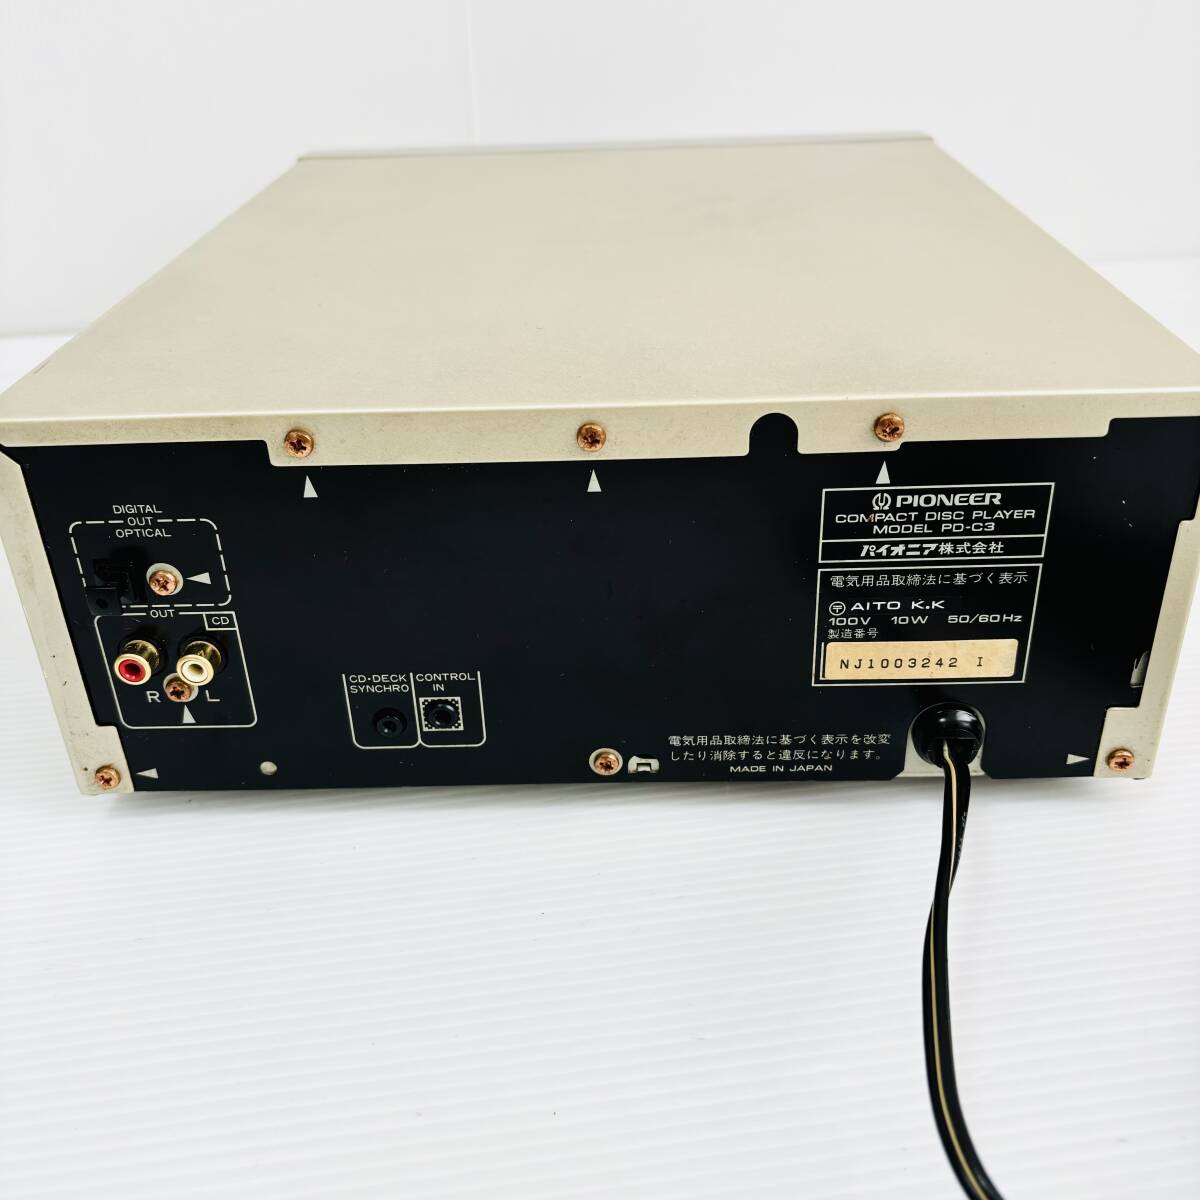  Pioneer PIONEER PD-C3 Junk CD плеер панель проигрыватель system электризация динамик текущее состояние ремонт 